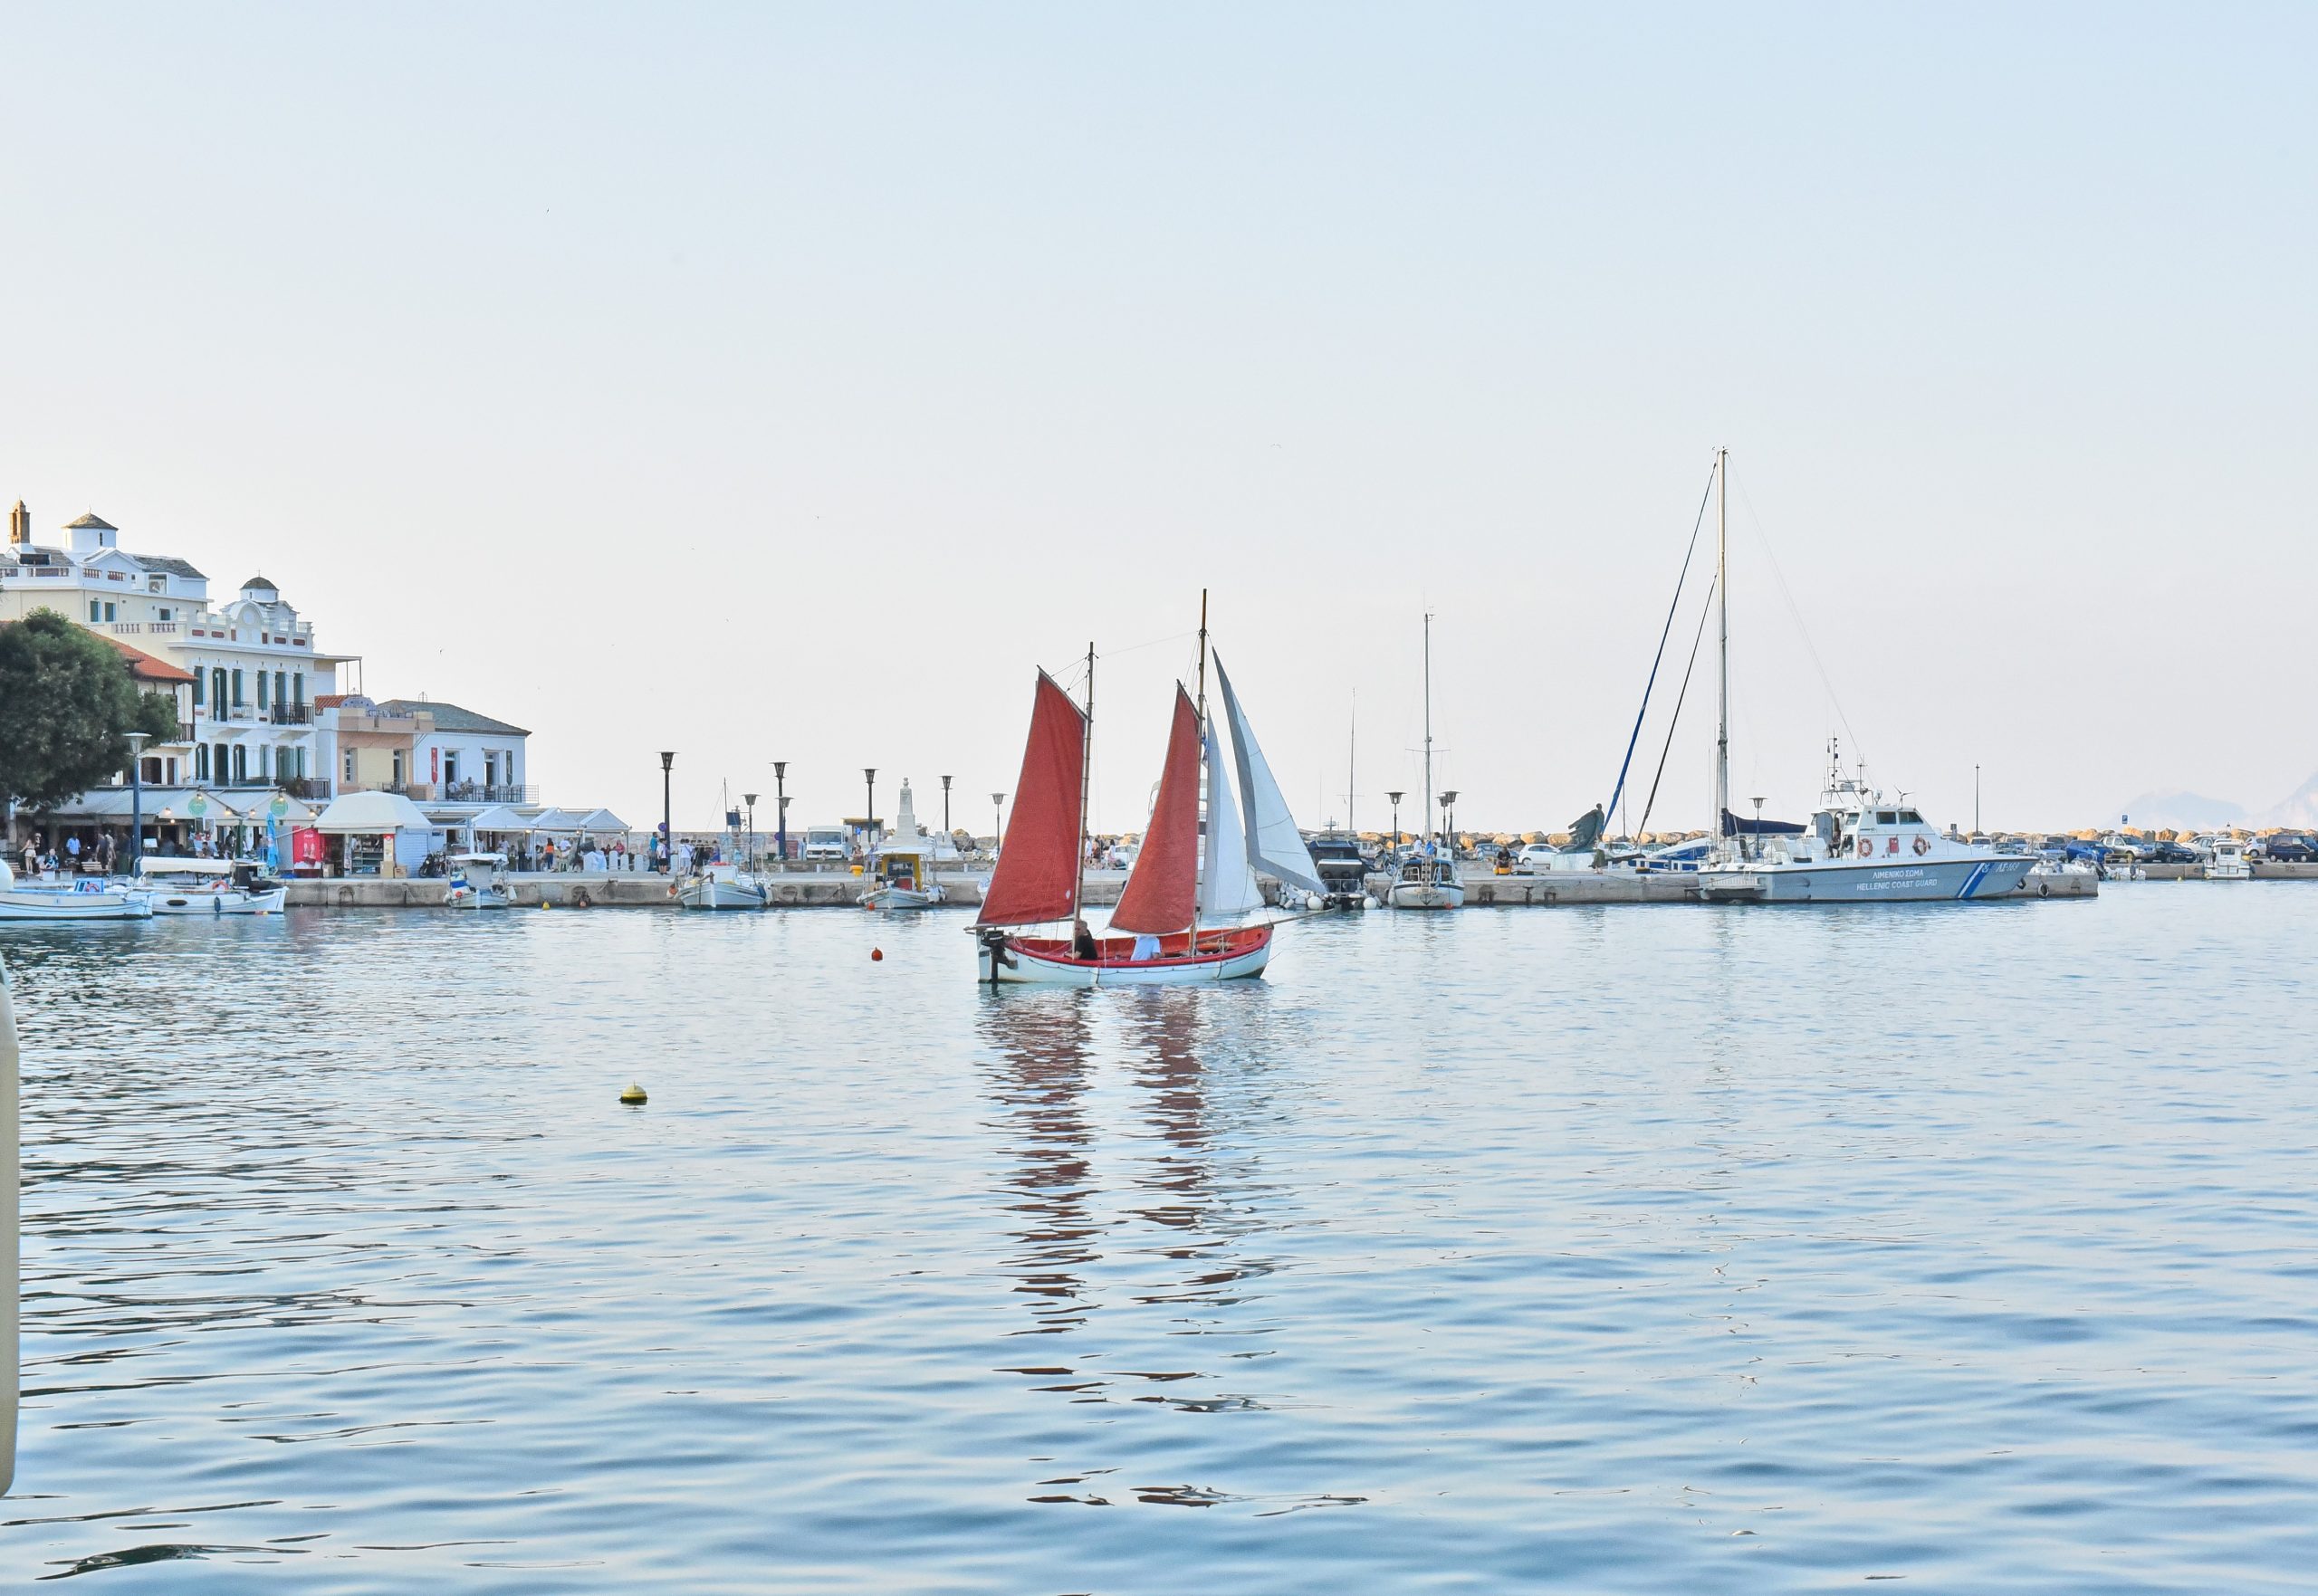 Η Σκόπελος φημίζεται για την όμορφη Χώρα και το γραφικό λιμάνι της, φωτογραφία: Γιάννης Σκιαθίτης